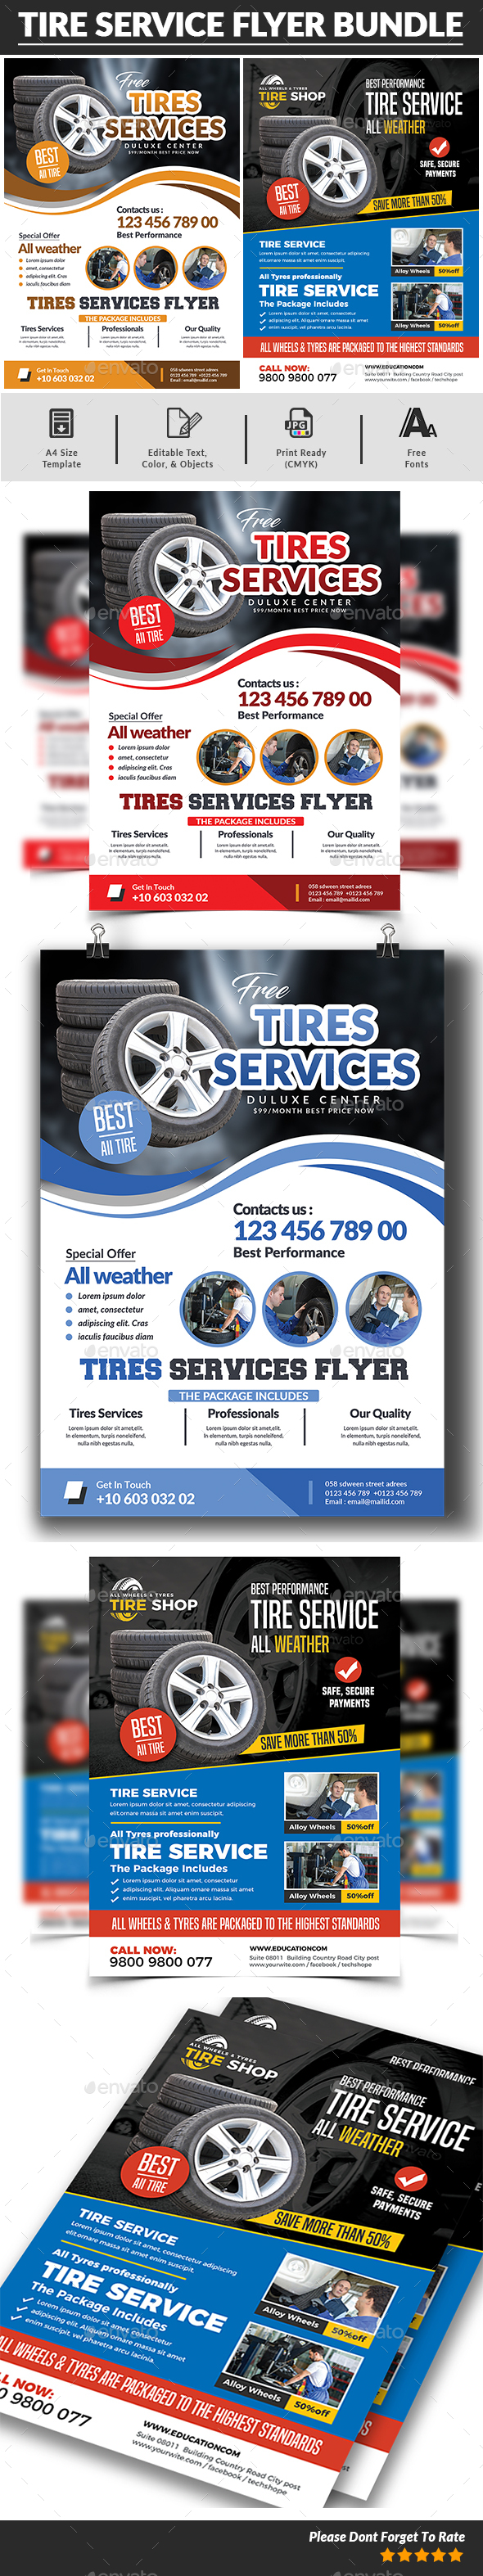 Tire Service Flyer Bundle